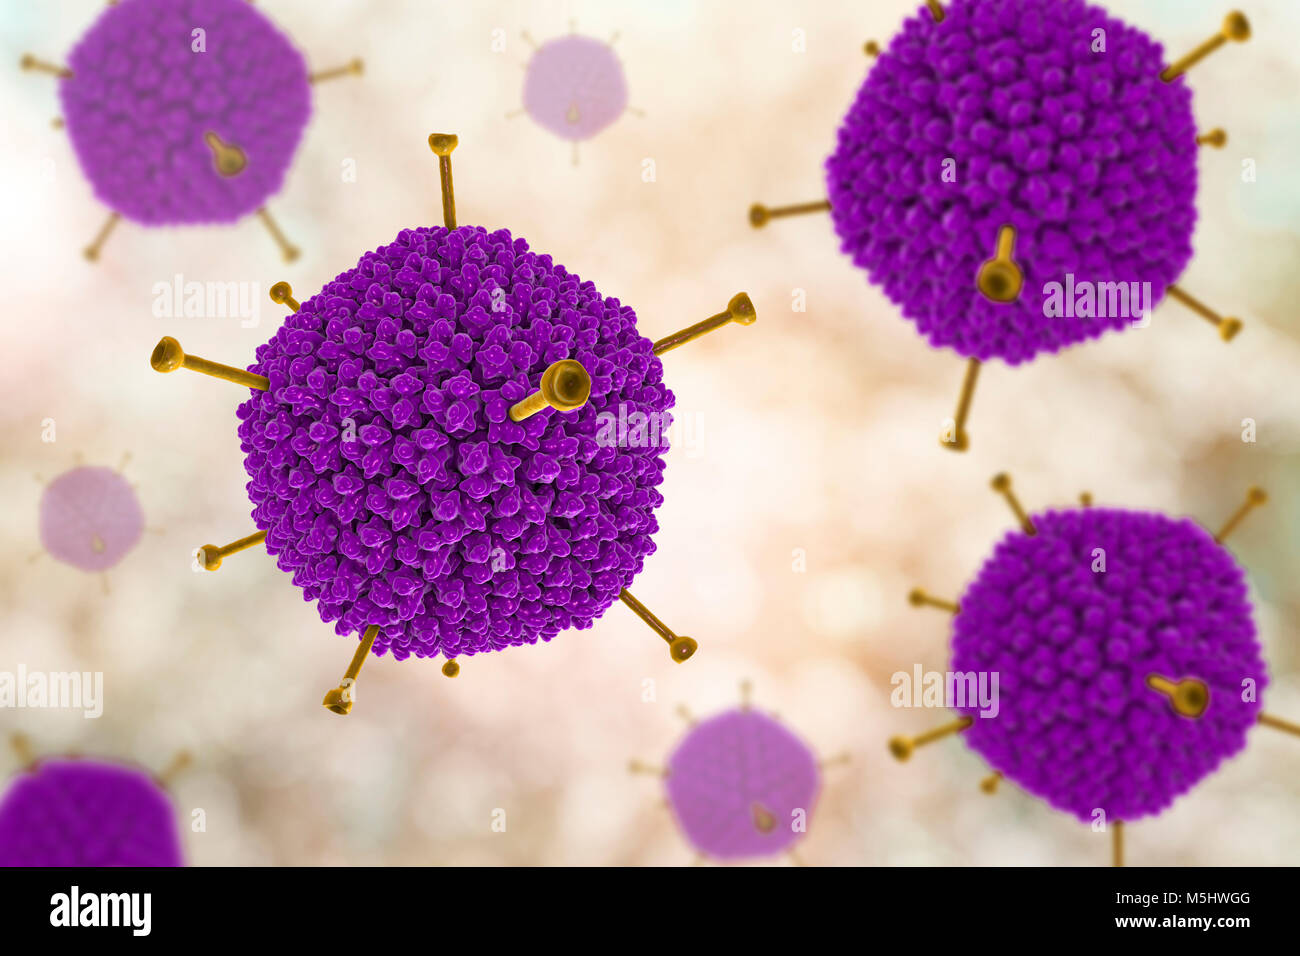 Struttura di adenovirus, computer illustrazione che mostra la struttura di superficie del virus esterna del rivestimento di proteina (capside). Molti gli adenovirus infettano il tratto respiratorio, causando il raffreddore comune di sintomi simili, e infettare anche gli occhi e gut, in particolare per i bambini. Il giallo sporgenze sono note come fibre di pentone e si trovano in corrispondenza di ciascuno dei vertici 12 del capside. Ciascuna fibra è ribaltata con proteine che permettono al virus di entrare nella sua cella di bersaglio. Foto Stock